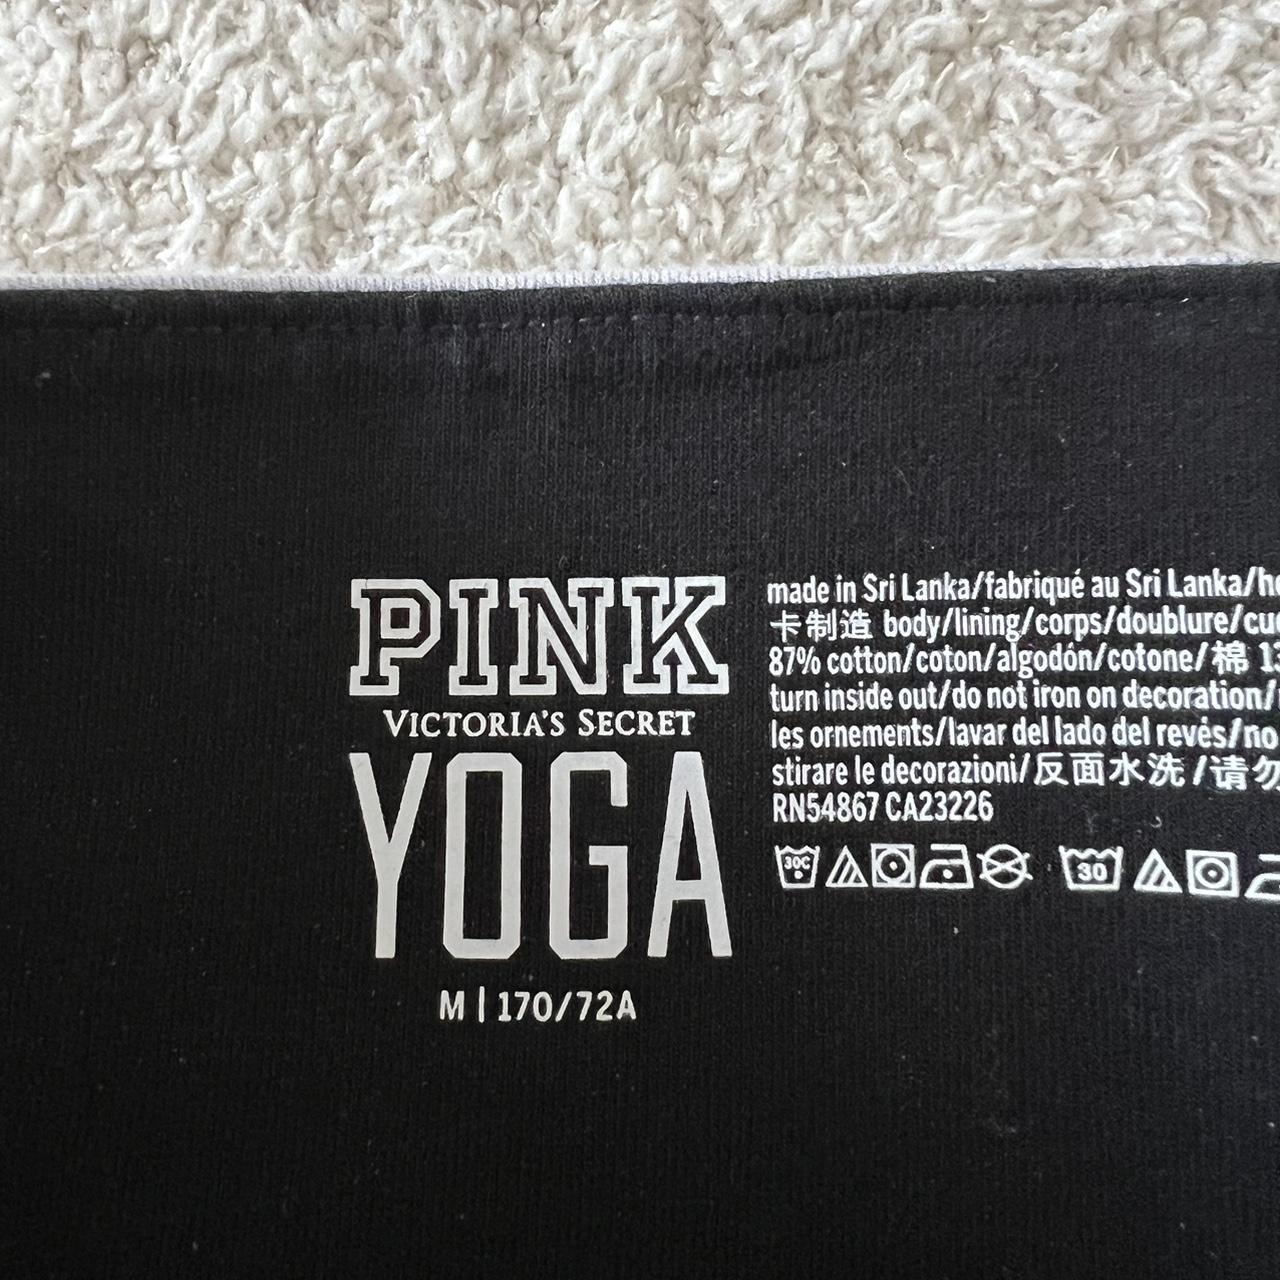 Pink Victoria's Secret Yoga Leggings Women's Size M 170/72A Black